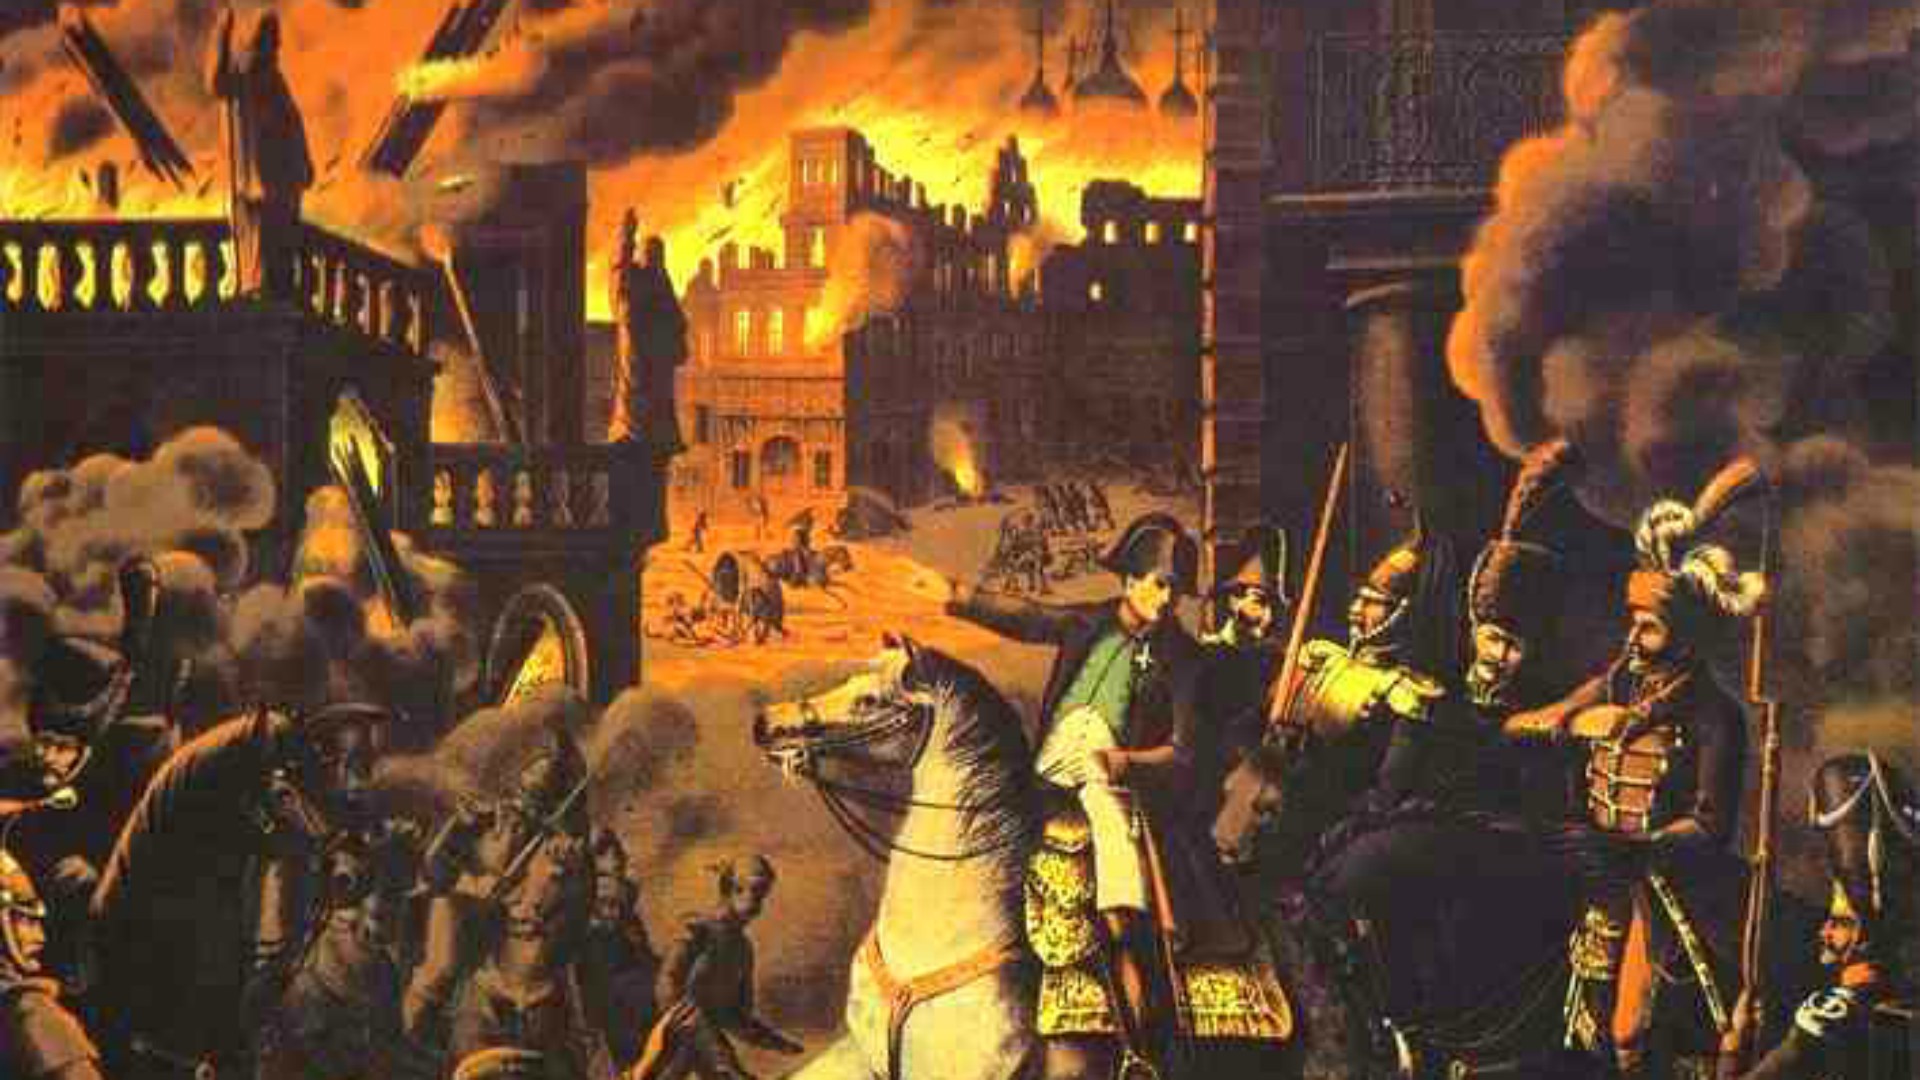 Le roman Guerre et paix relate l'incendie de Moscou, prise par Napoléon (artiste inconnu)